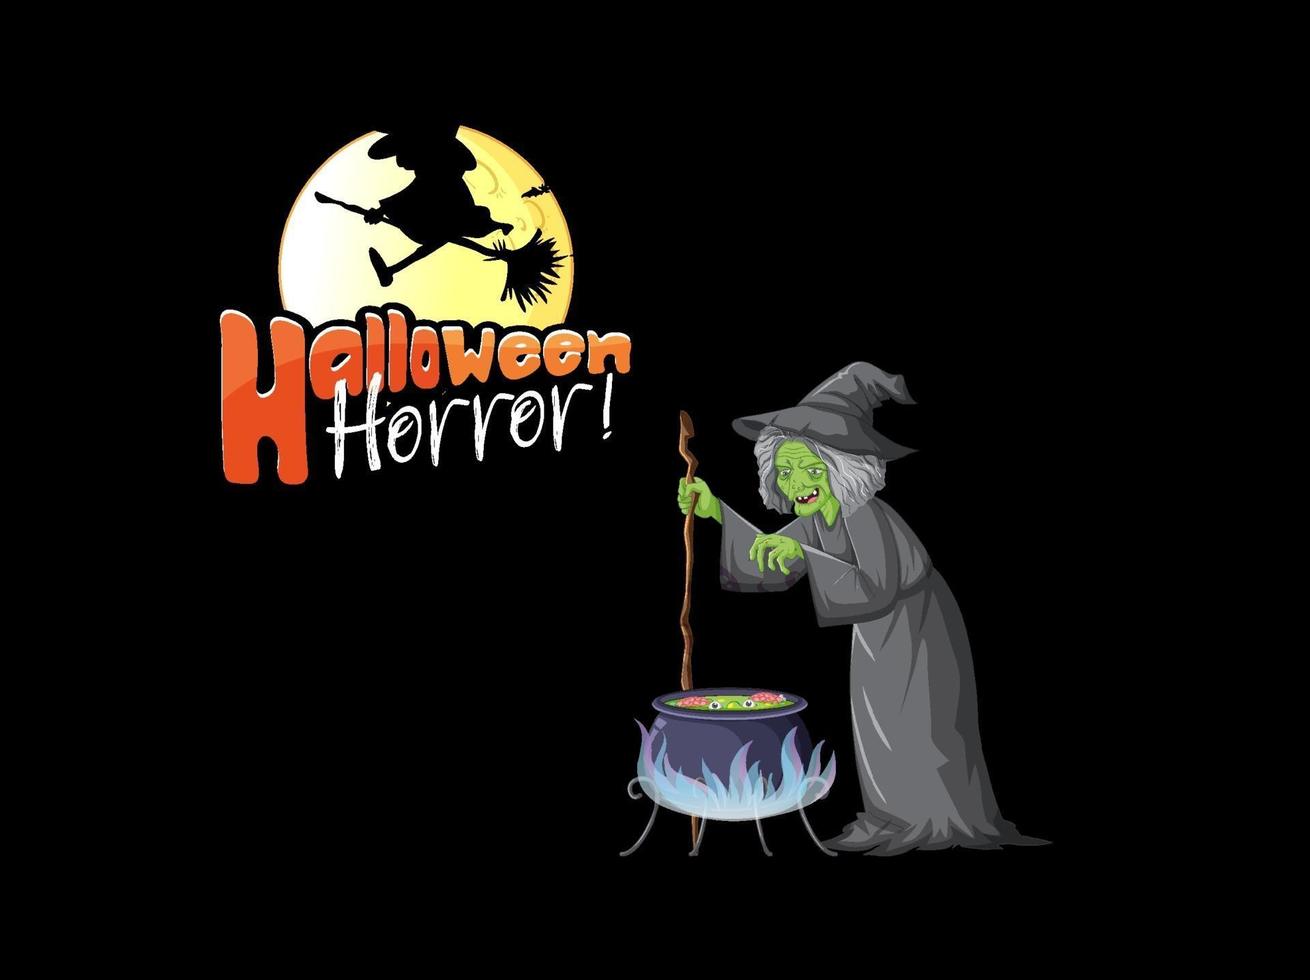 Halloween-Horror-Logo mit alter Hexenzeichentrickfigur vektor